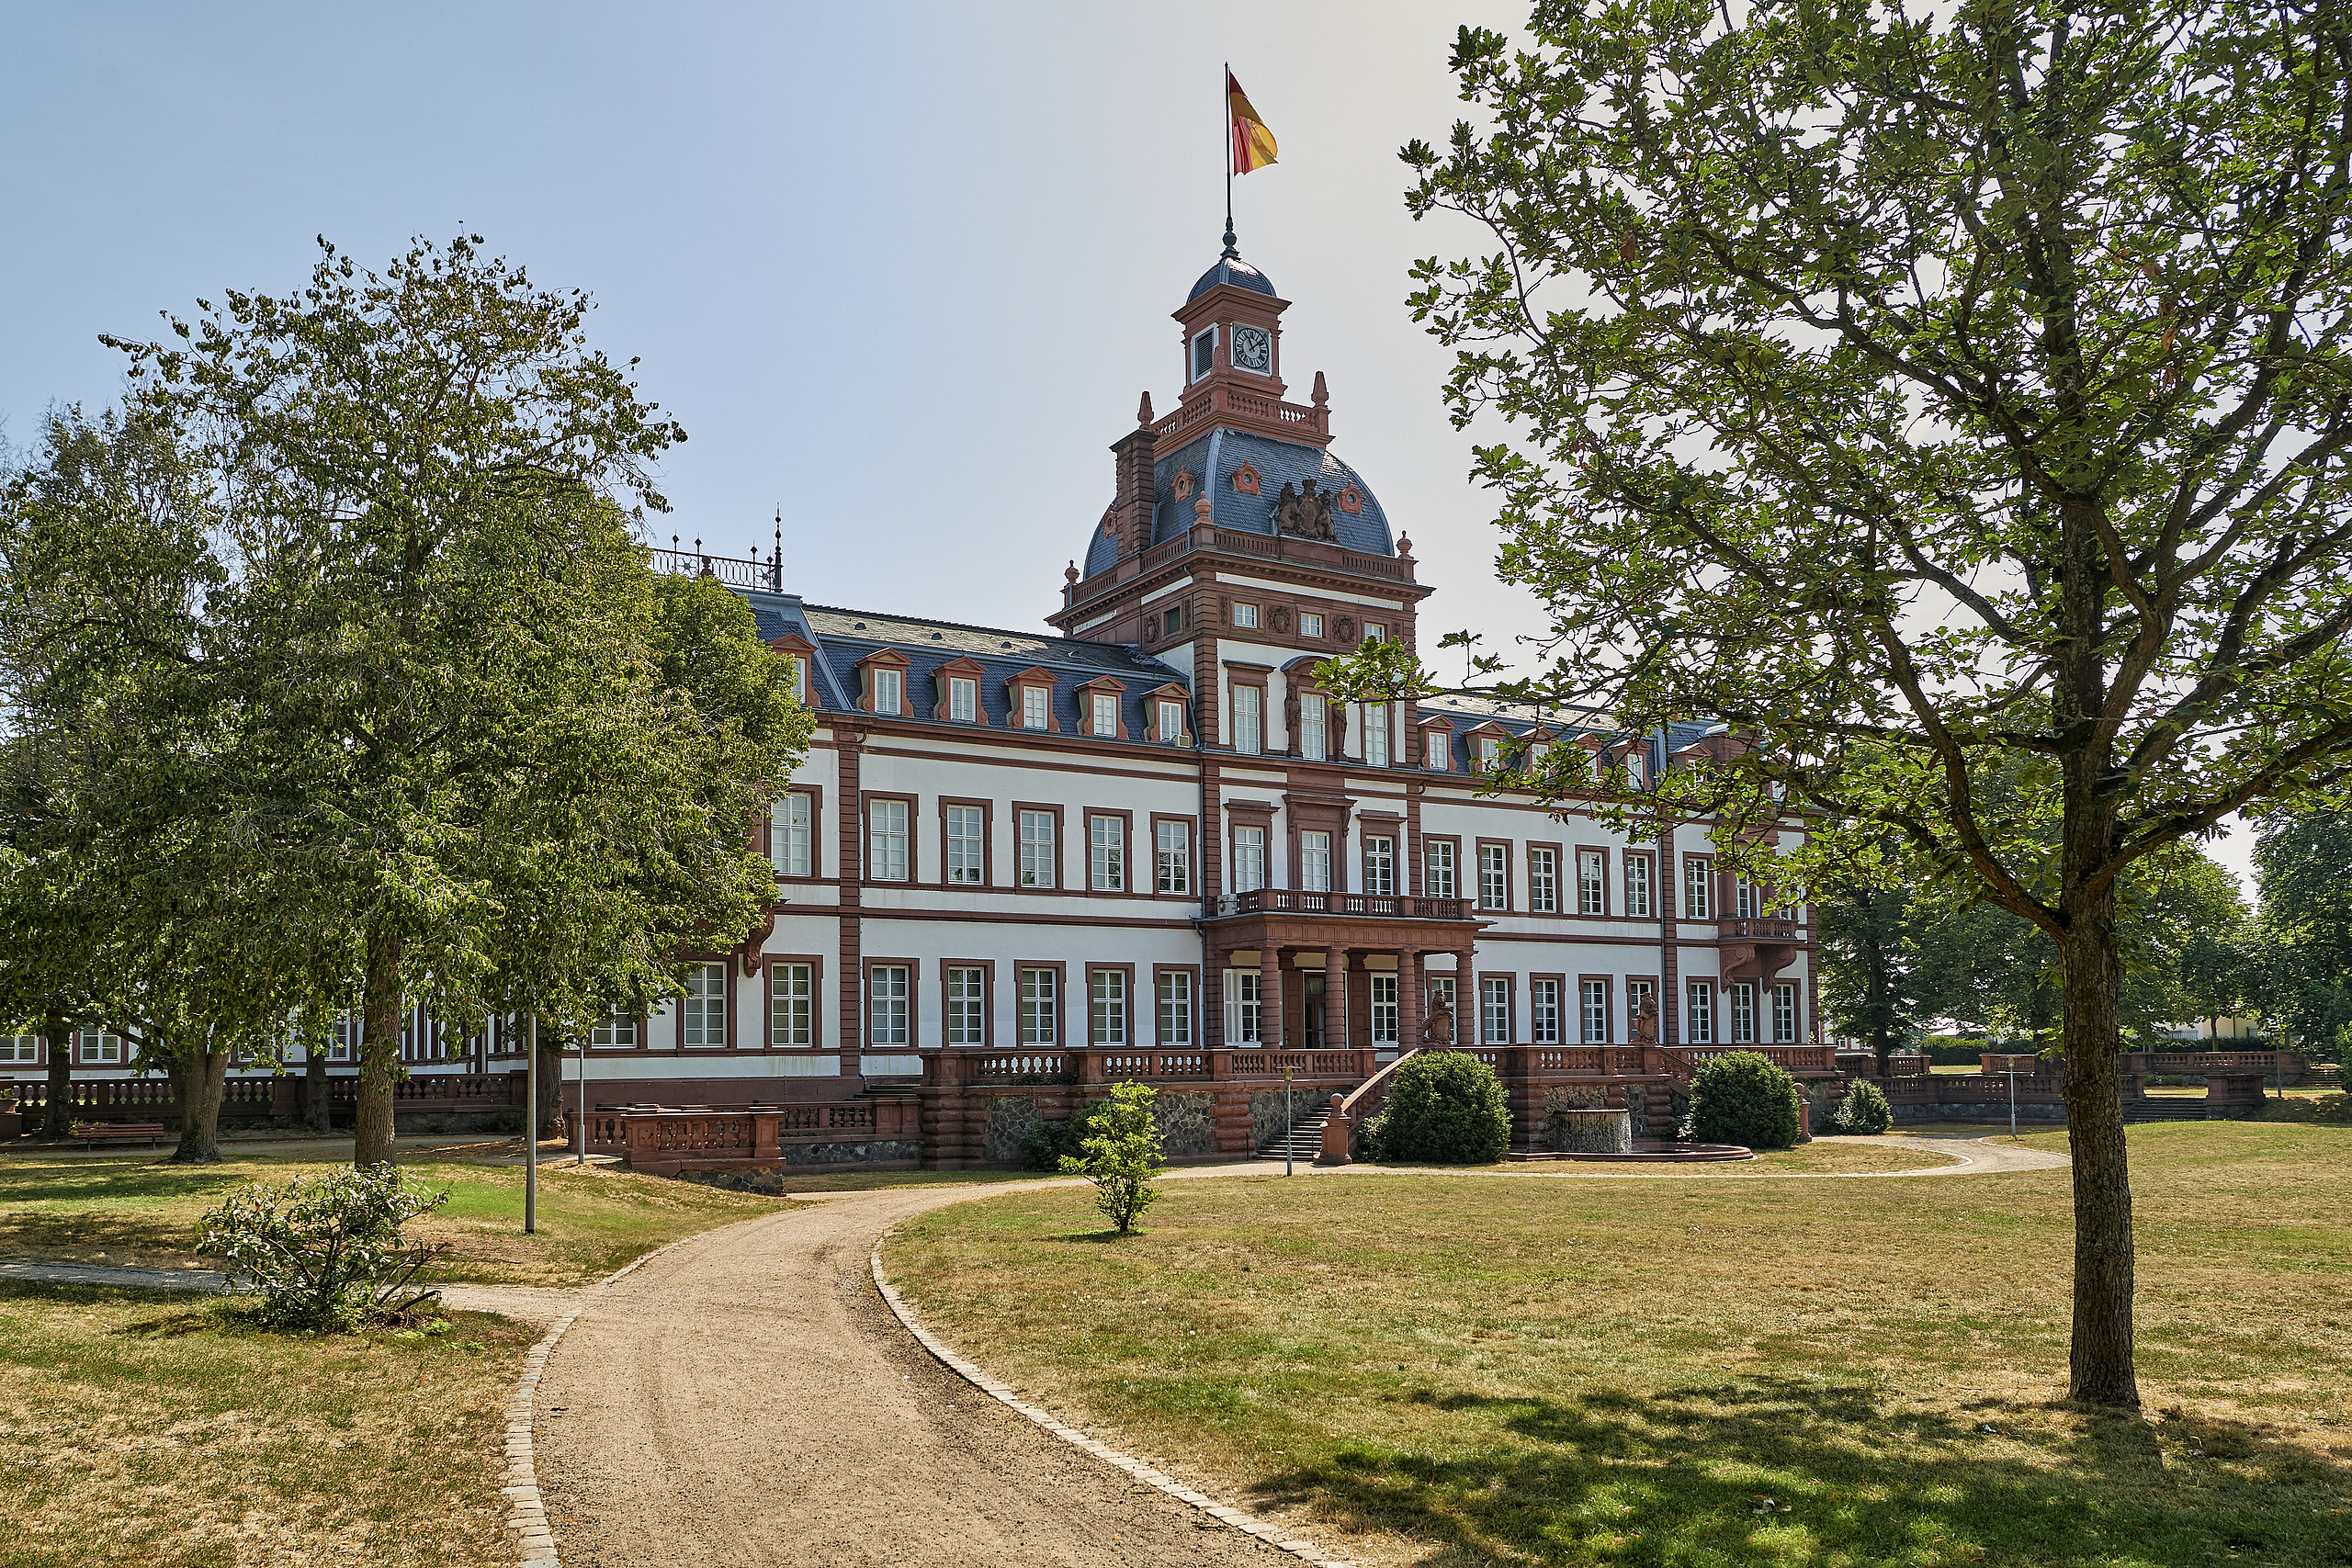 Blick auf das Schloss Philipsruhe in Hanau